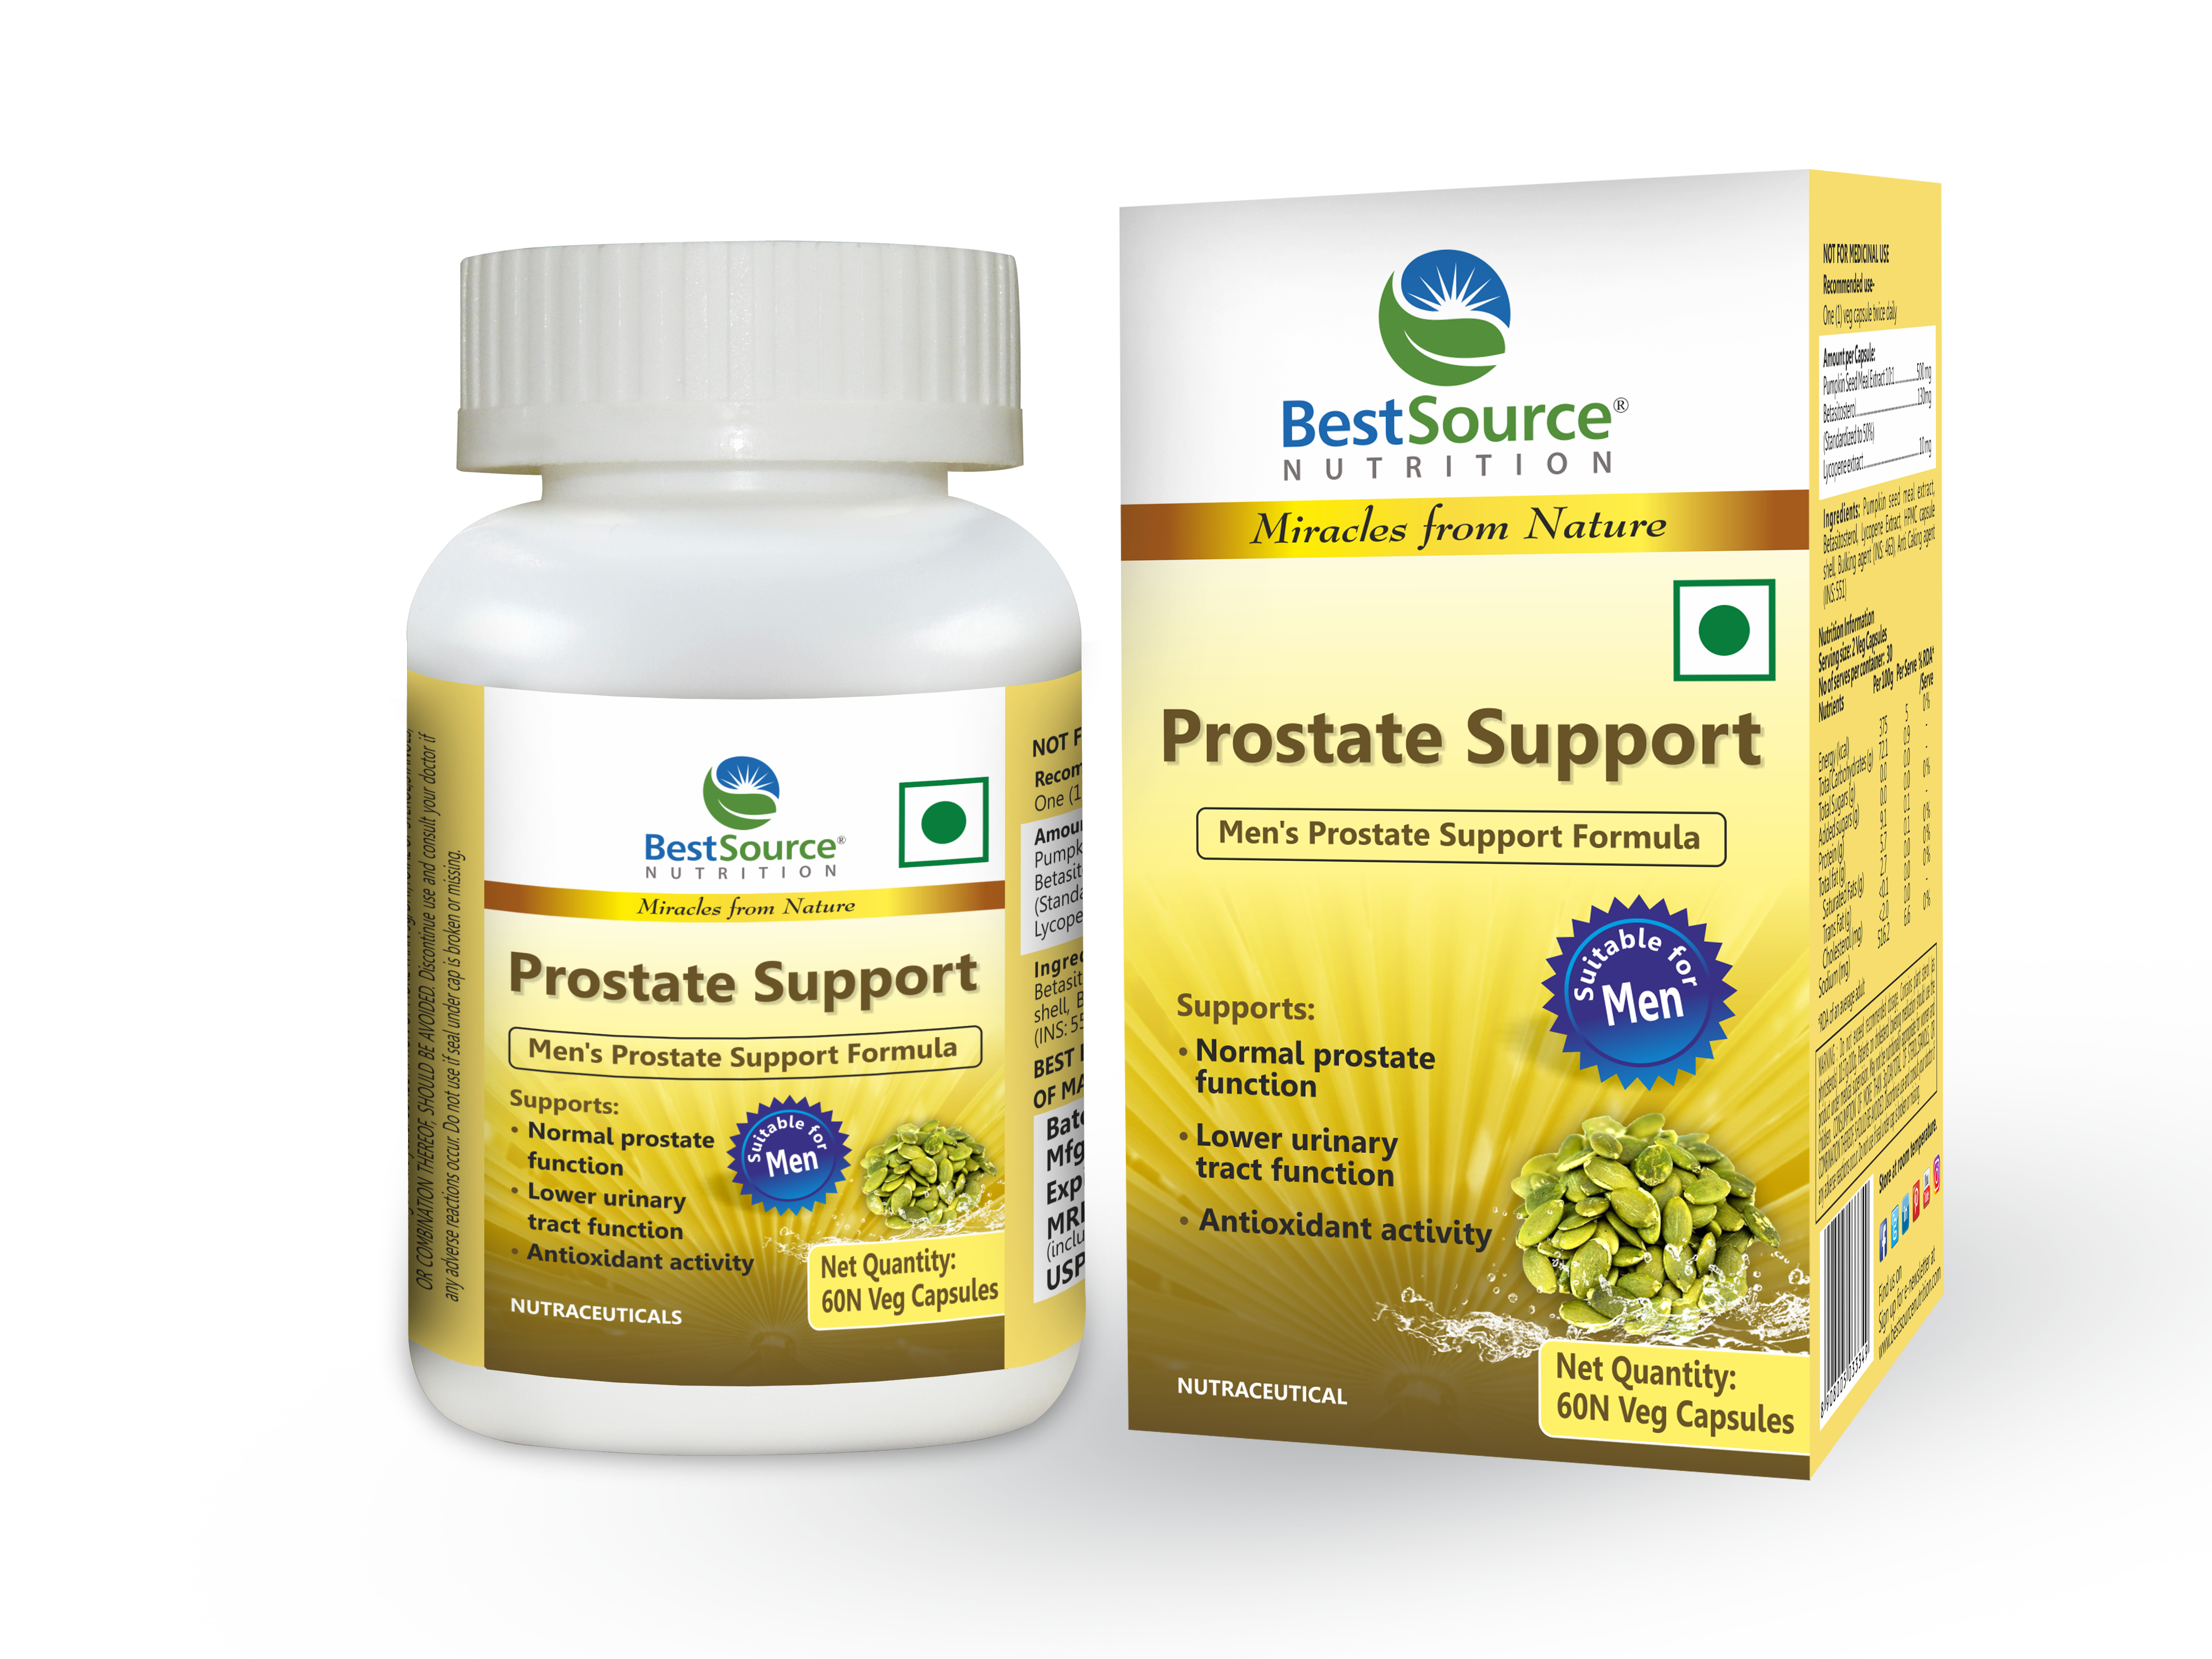 Prostate Support Formula